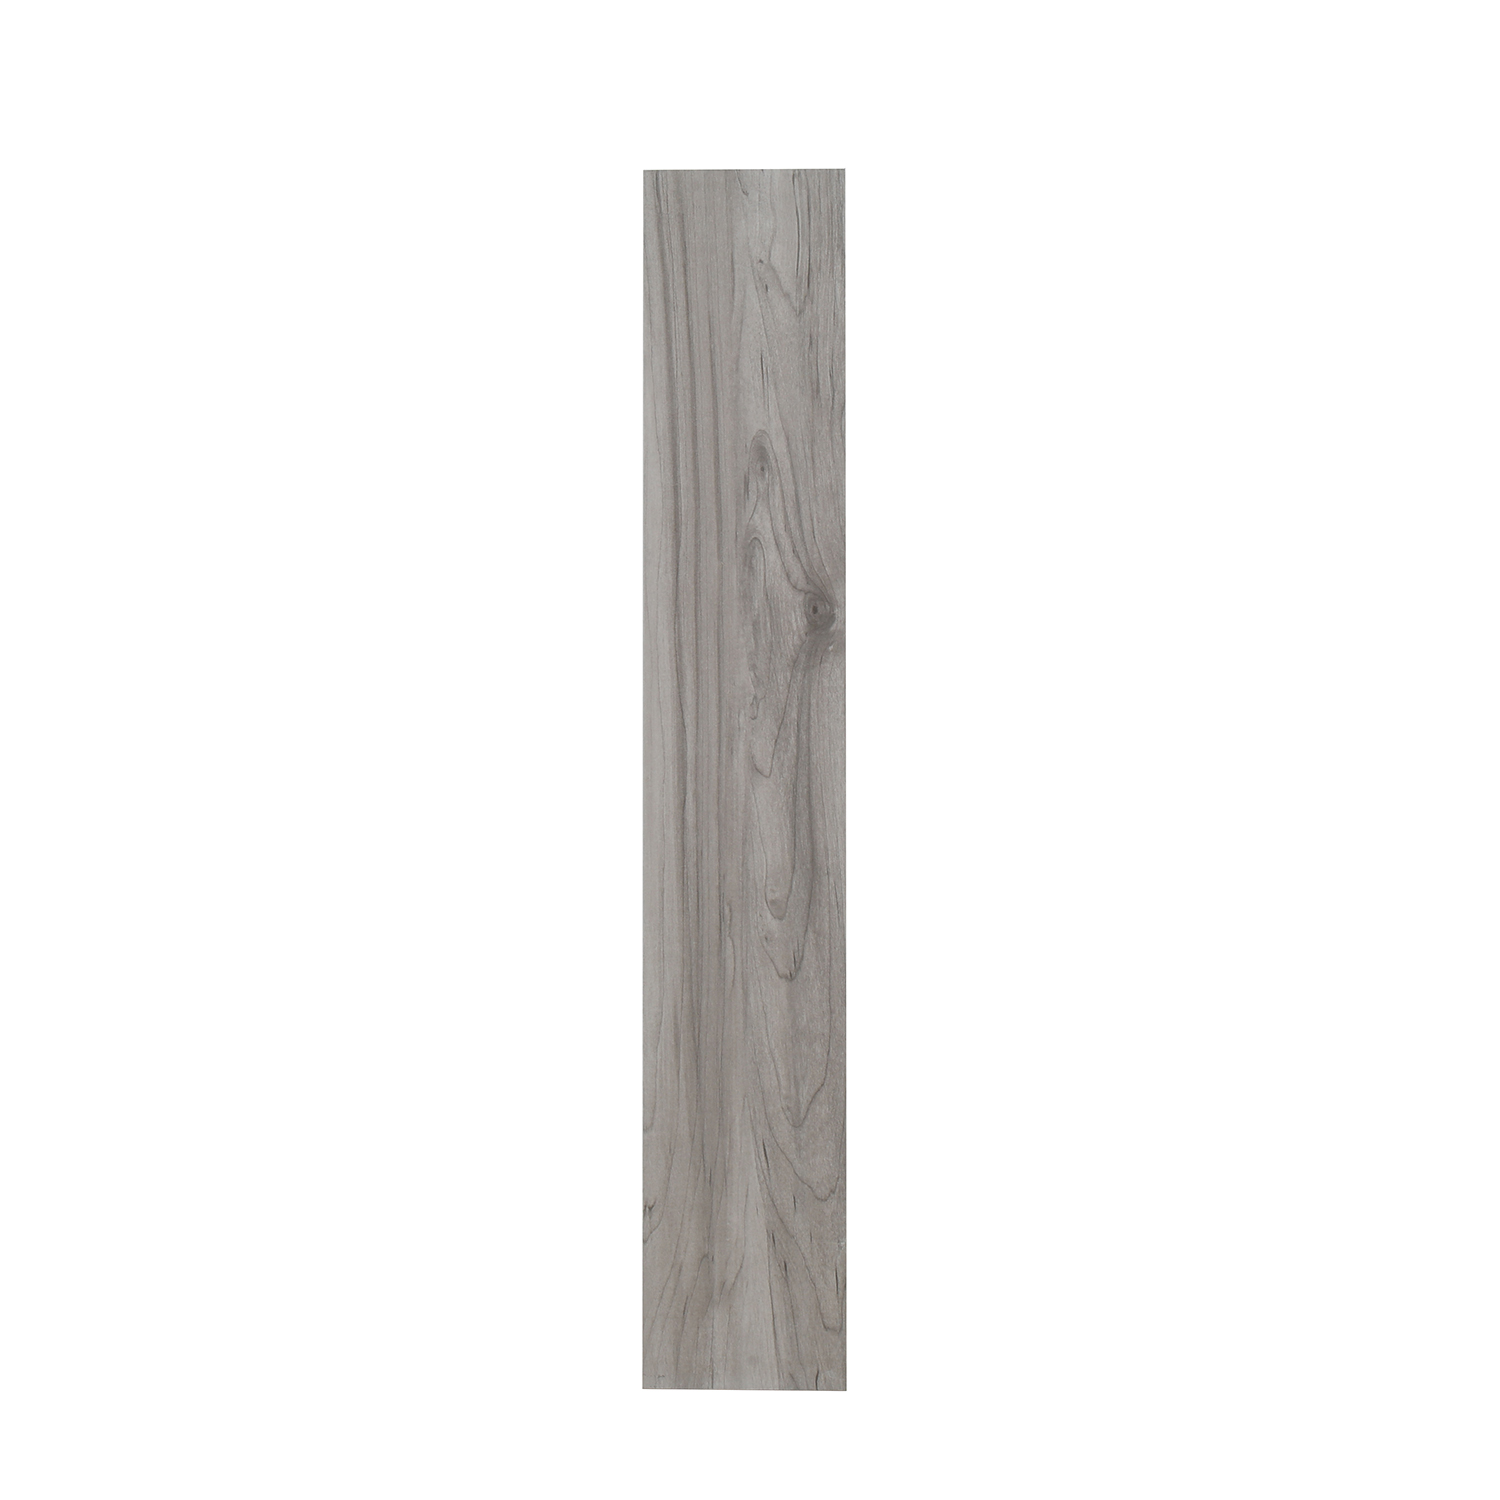 3D Inkjet Like Natural wood looks wooden floor tiles-AJ915053M-150x900